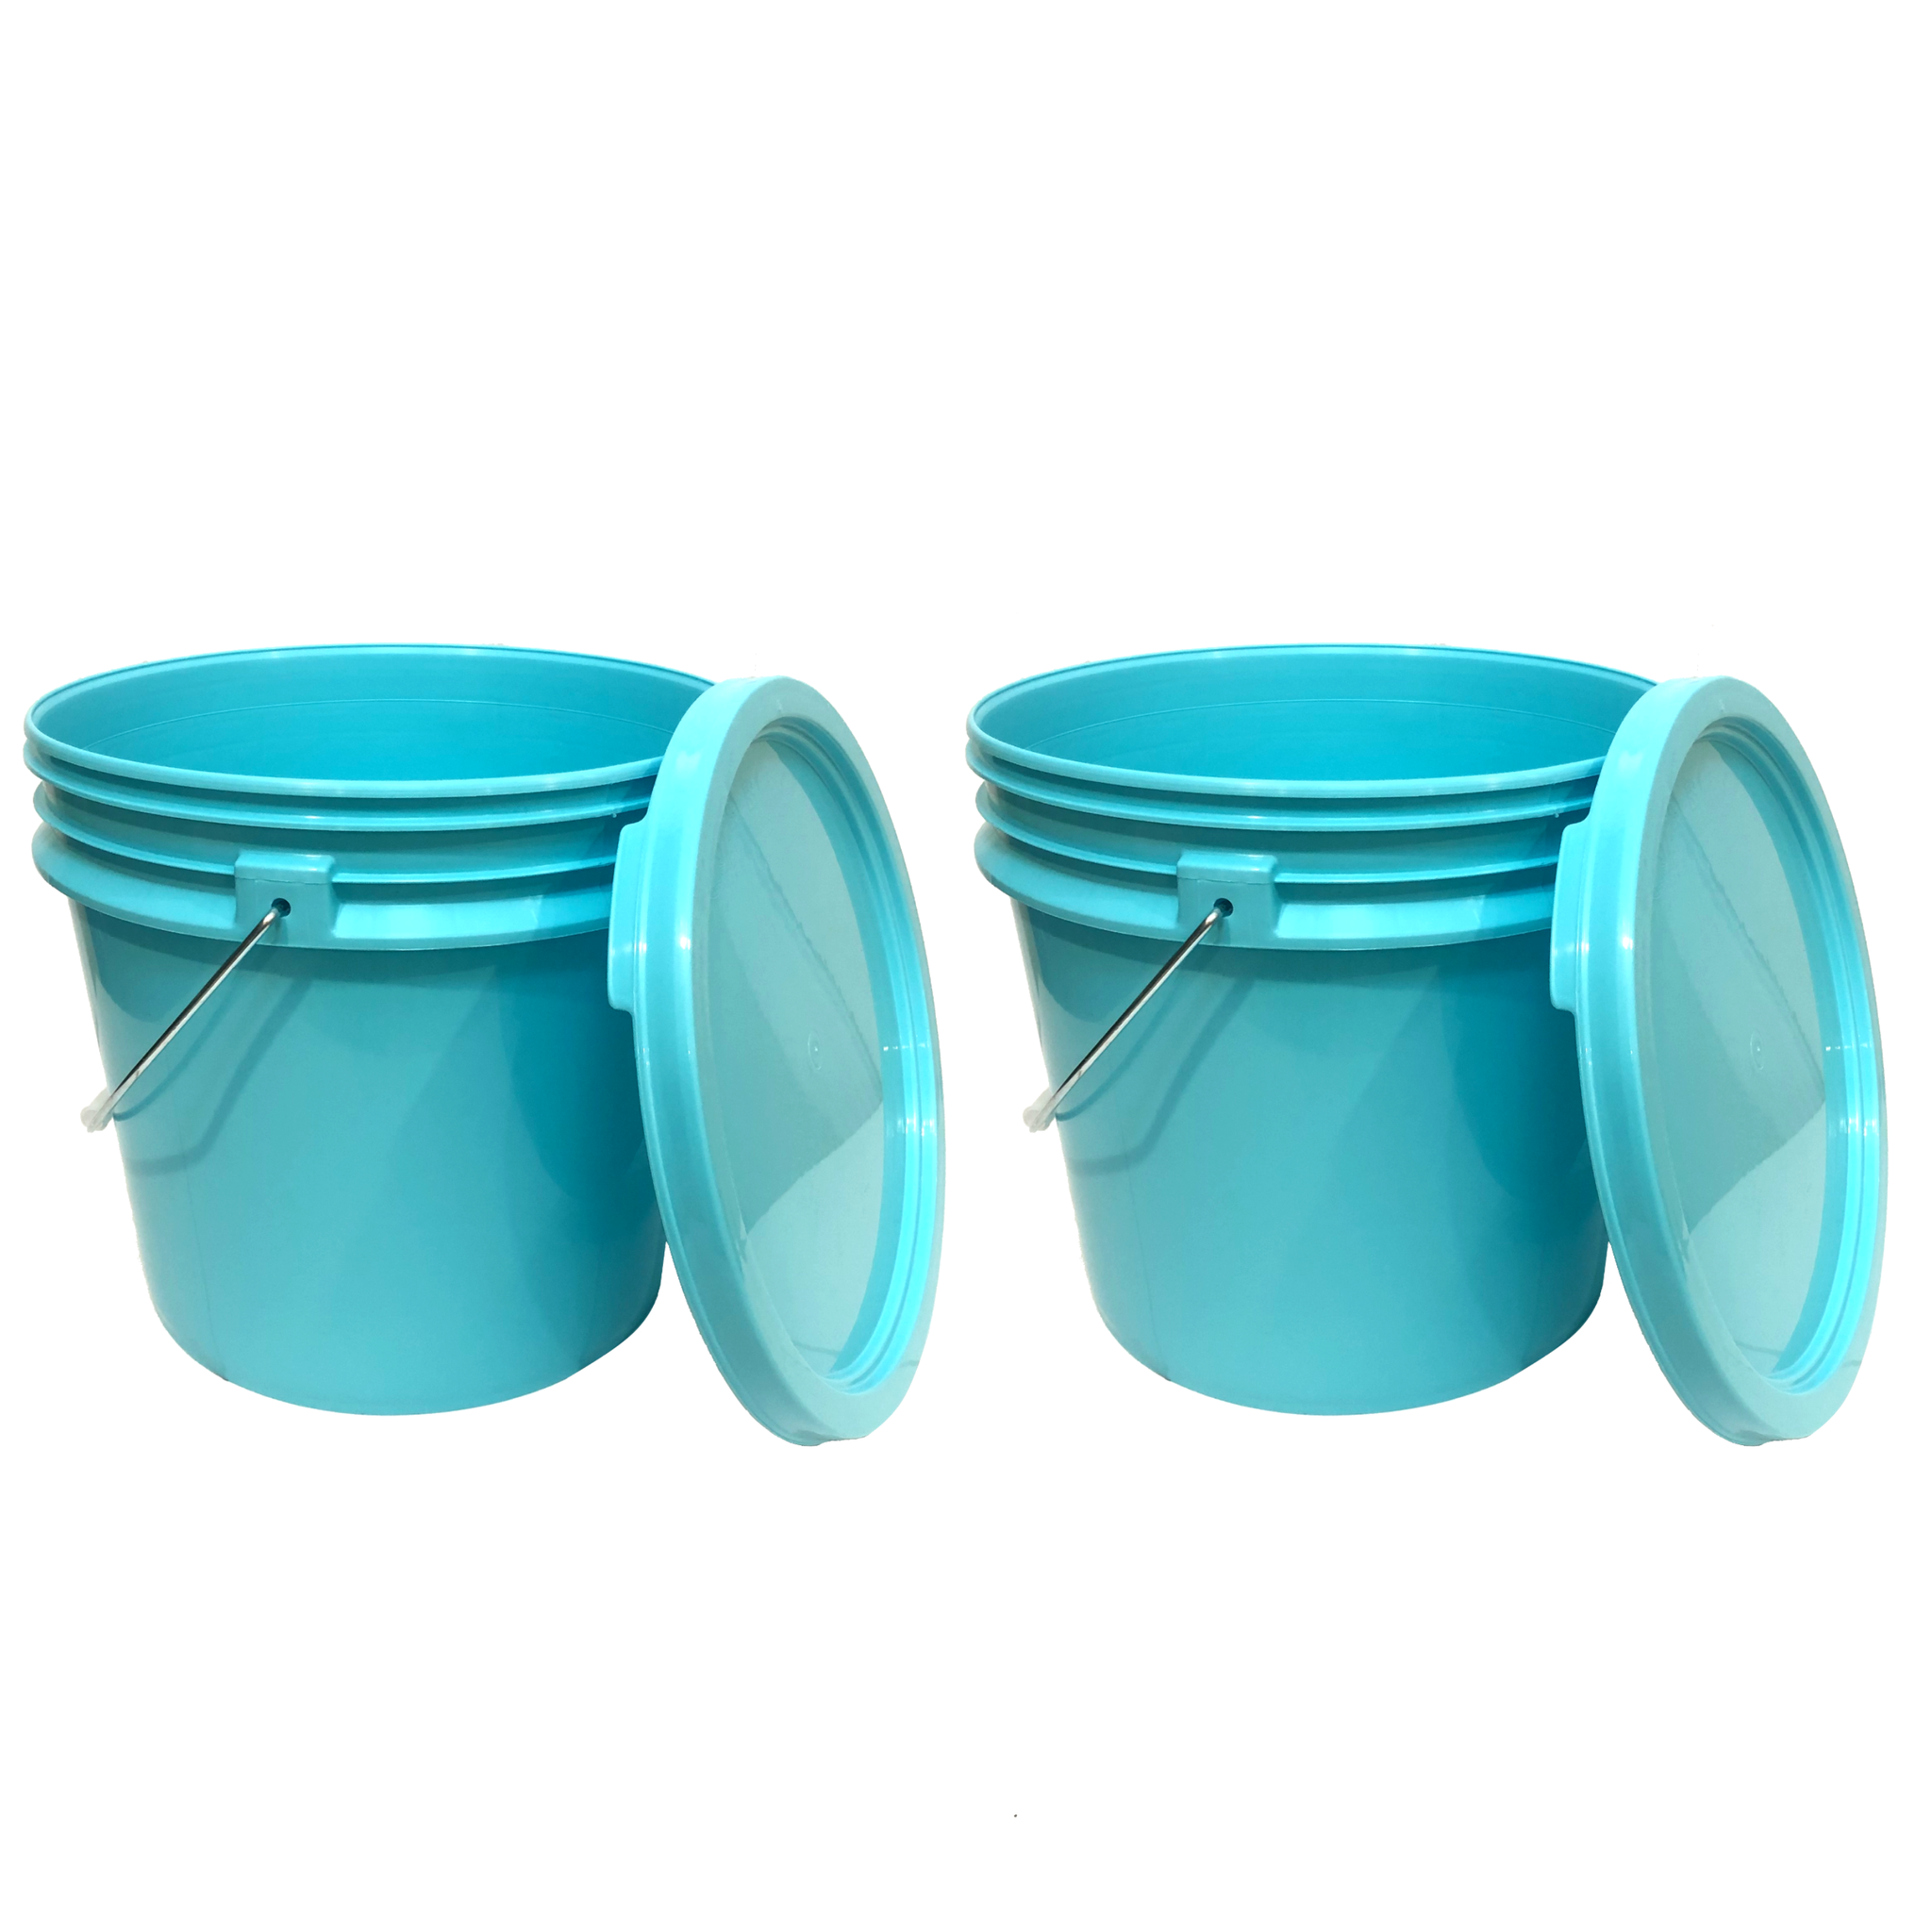 Bucket - 3.5 Gallon Bucket Metal Handle with lid, Aqua Blue color